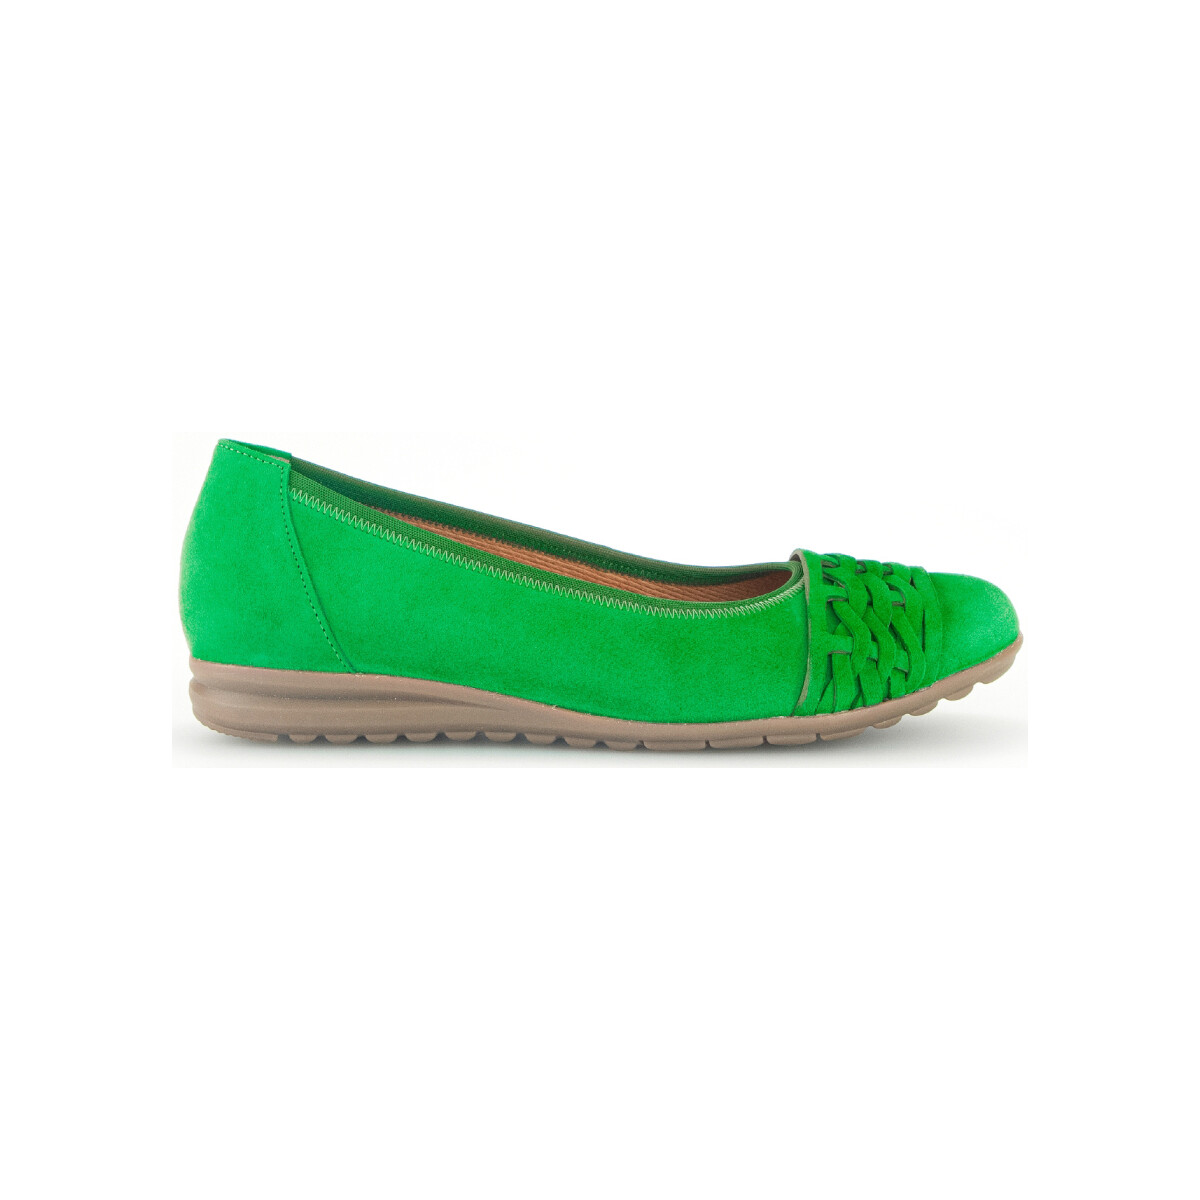 Chaussures Femme Utilisez au minimum 1 chiffre ou 1 caractère spécial Ballerines en cuir velours à talon compensé Vert